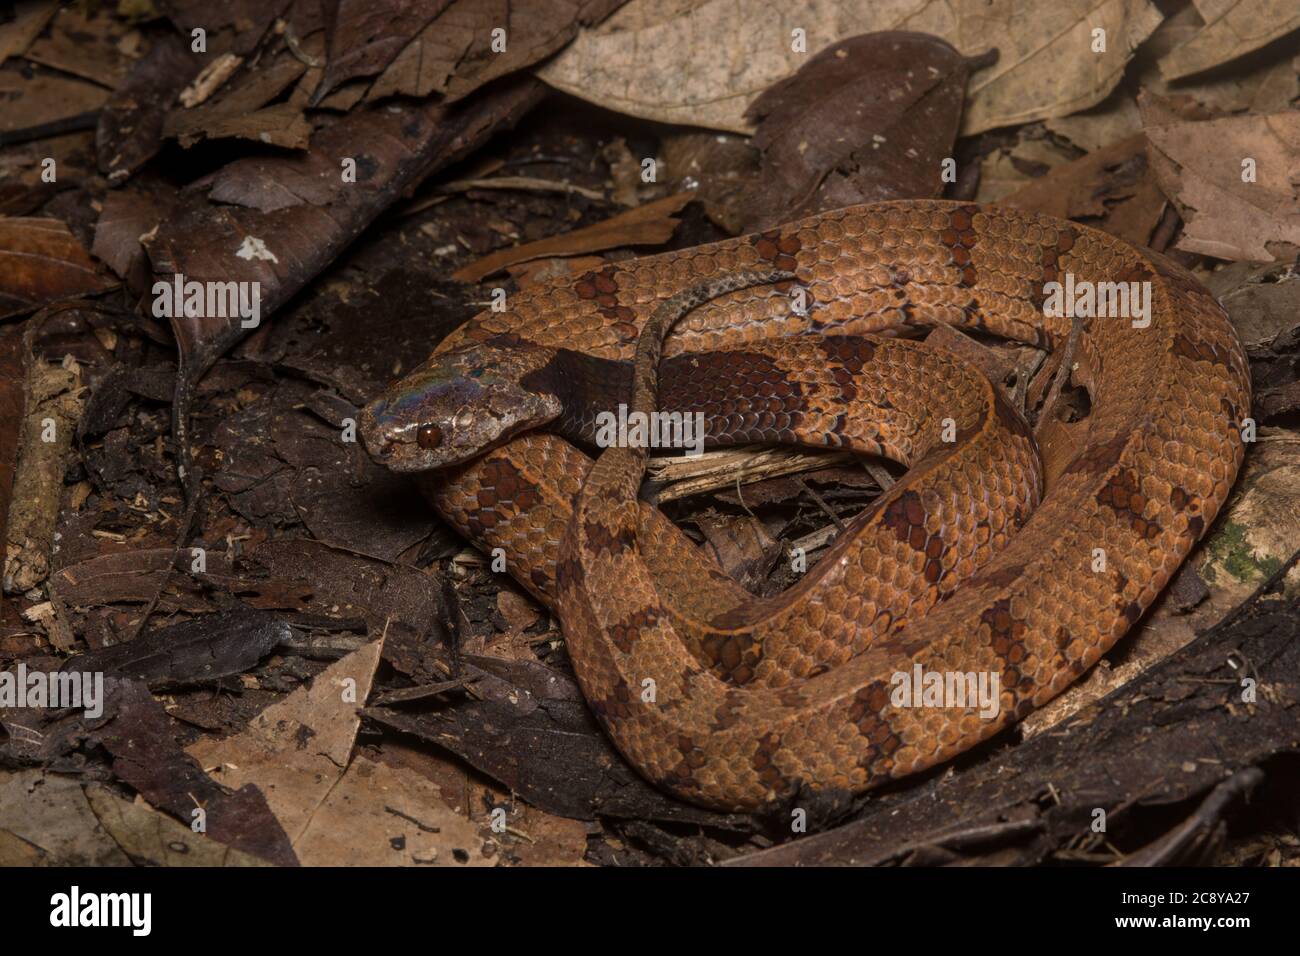 Le serpent à loutre à col foncé a récemment été divisé en deux espèces dont l'une était celle-ci : l'Asthenodipsas borneensis, le serpent à loutre Bornean. Banque D'Images